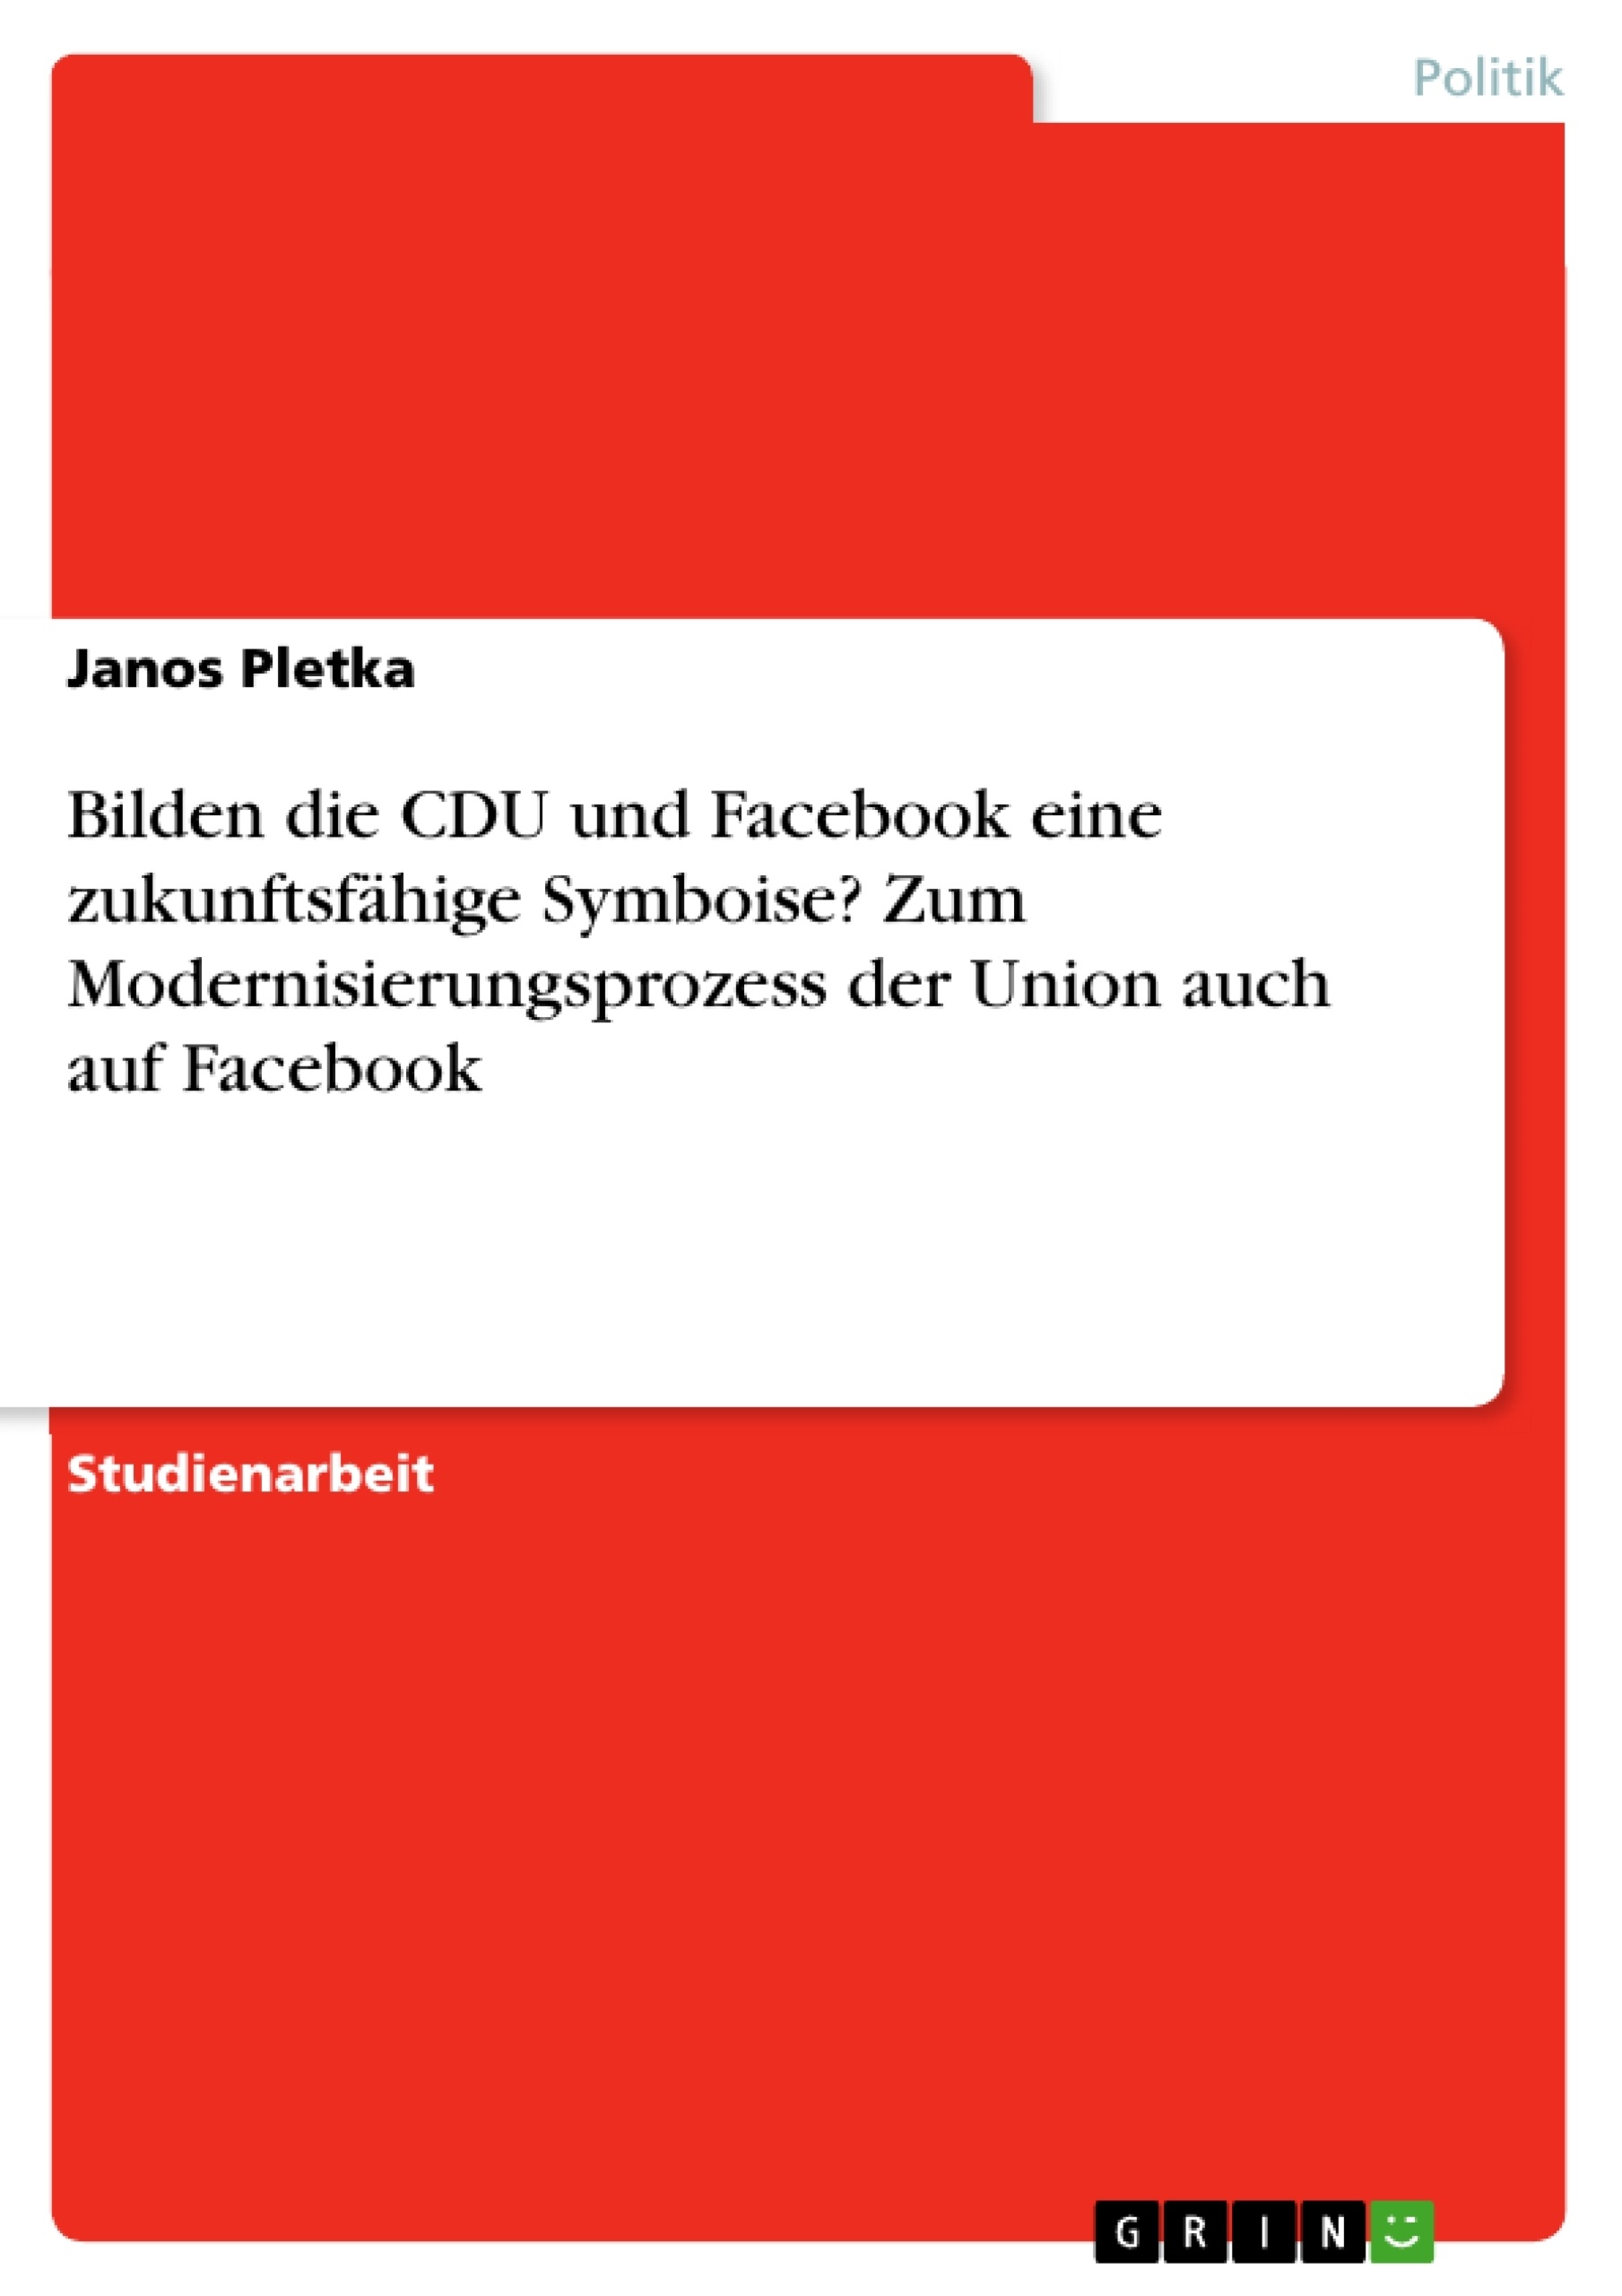 Título: Bilden die CDU und Facebook eine zukunftsfähige Symboise? Zum Modernisierungsprozess der Union auch auf Facebook